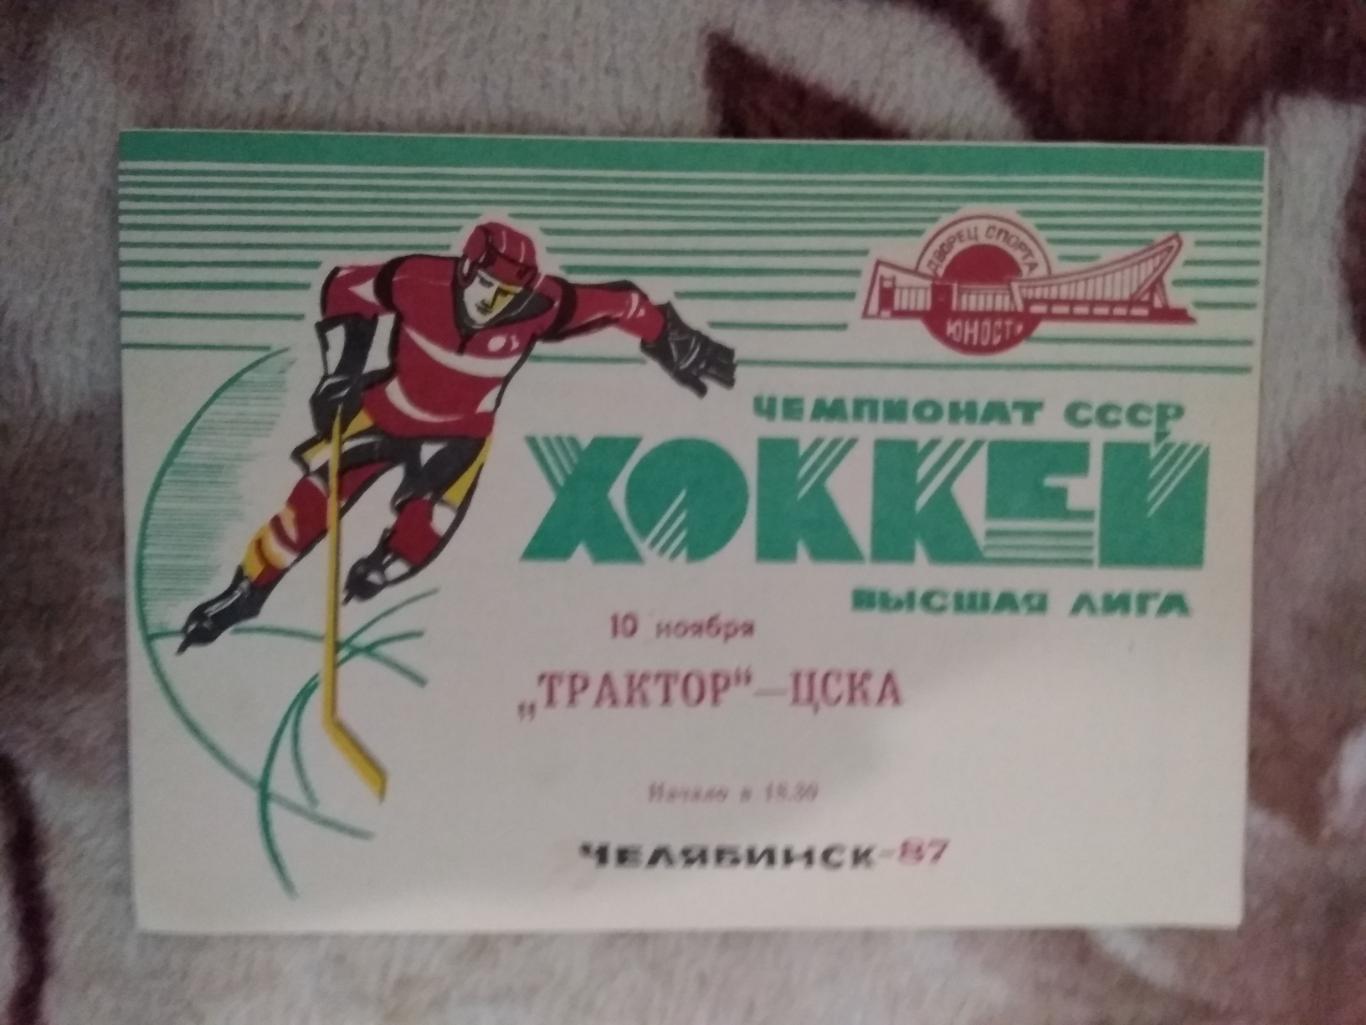 Трактор (Челябинск) - ЦСКА (Москва) 10.11.1987 г.